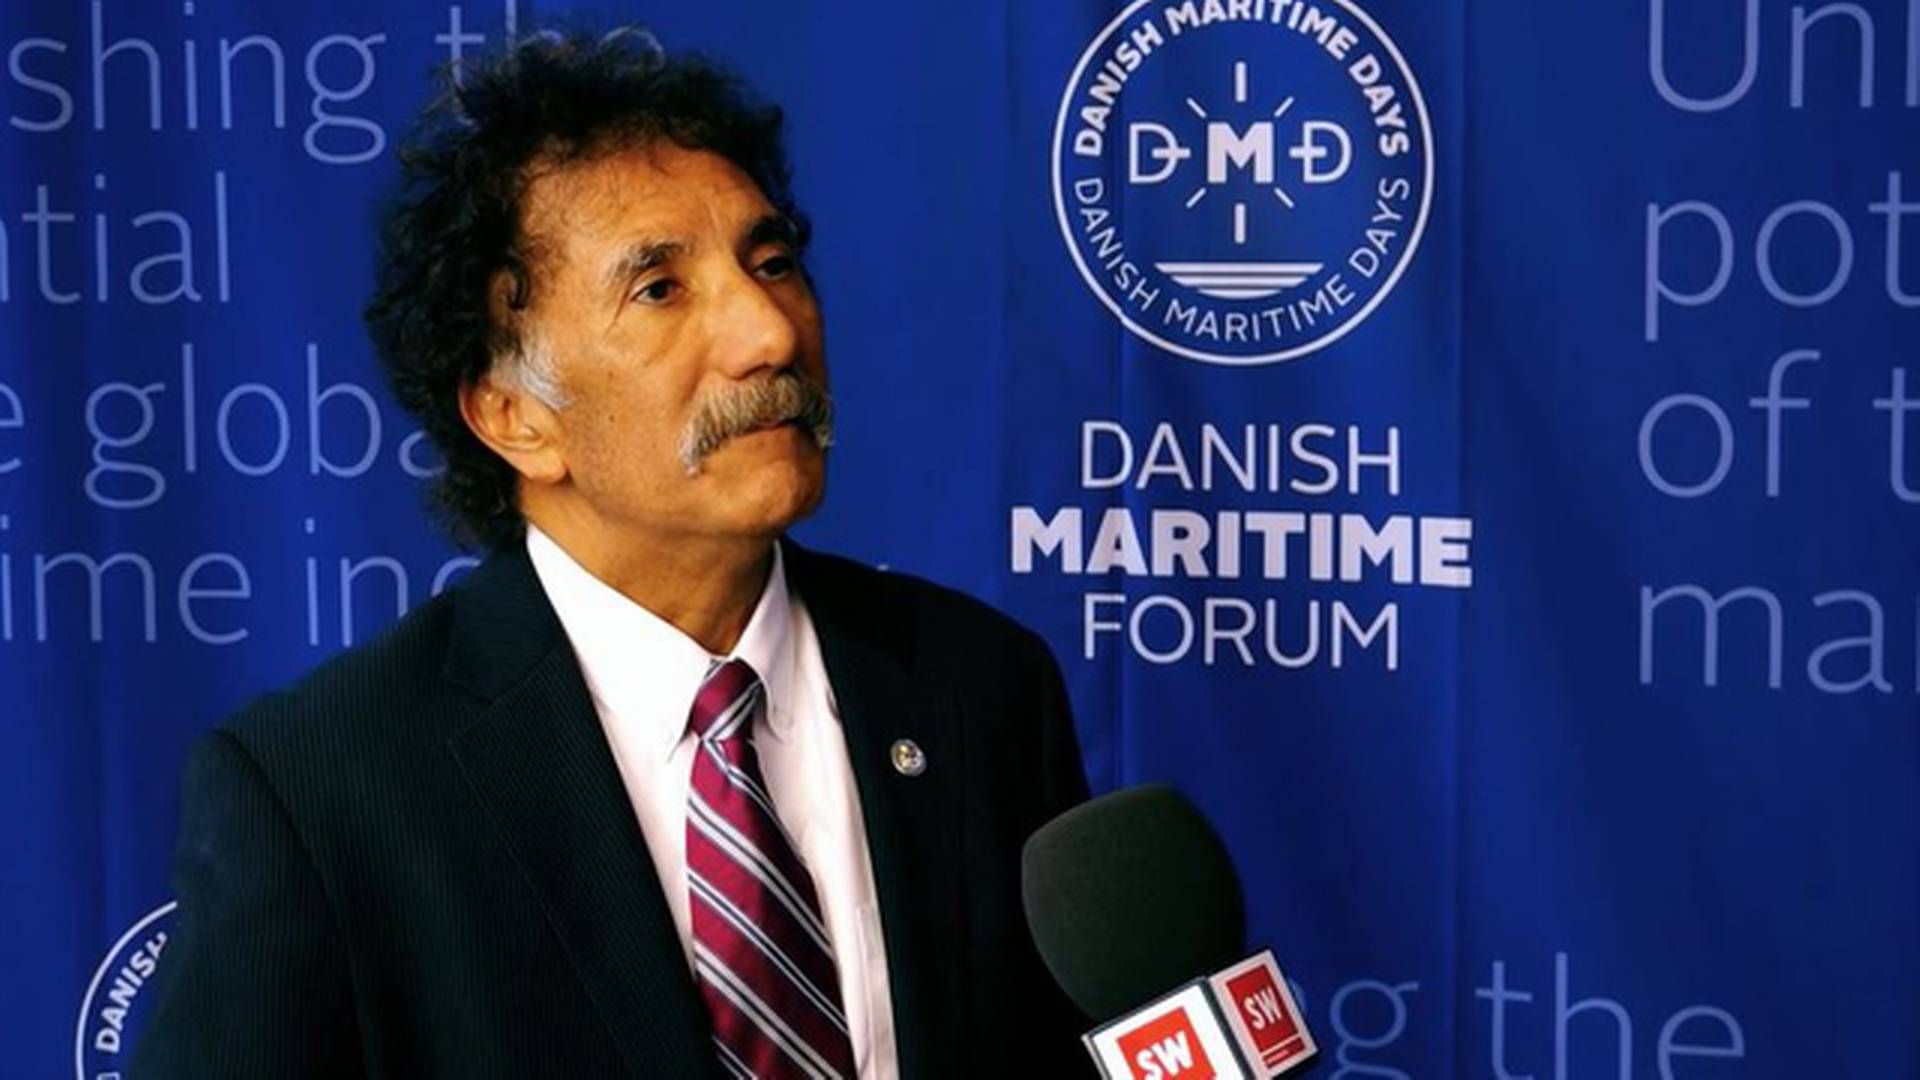 Mario Cordero at Danish Maritime Forum in Copenhagen